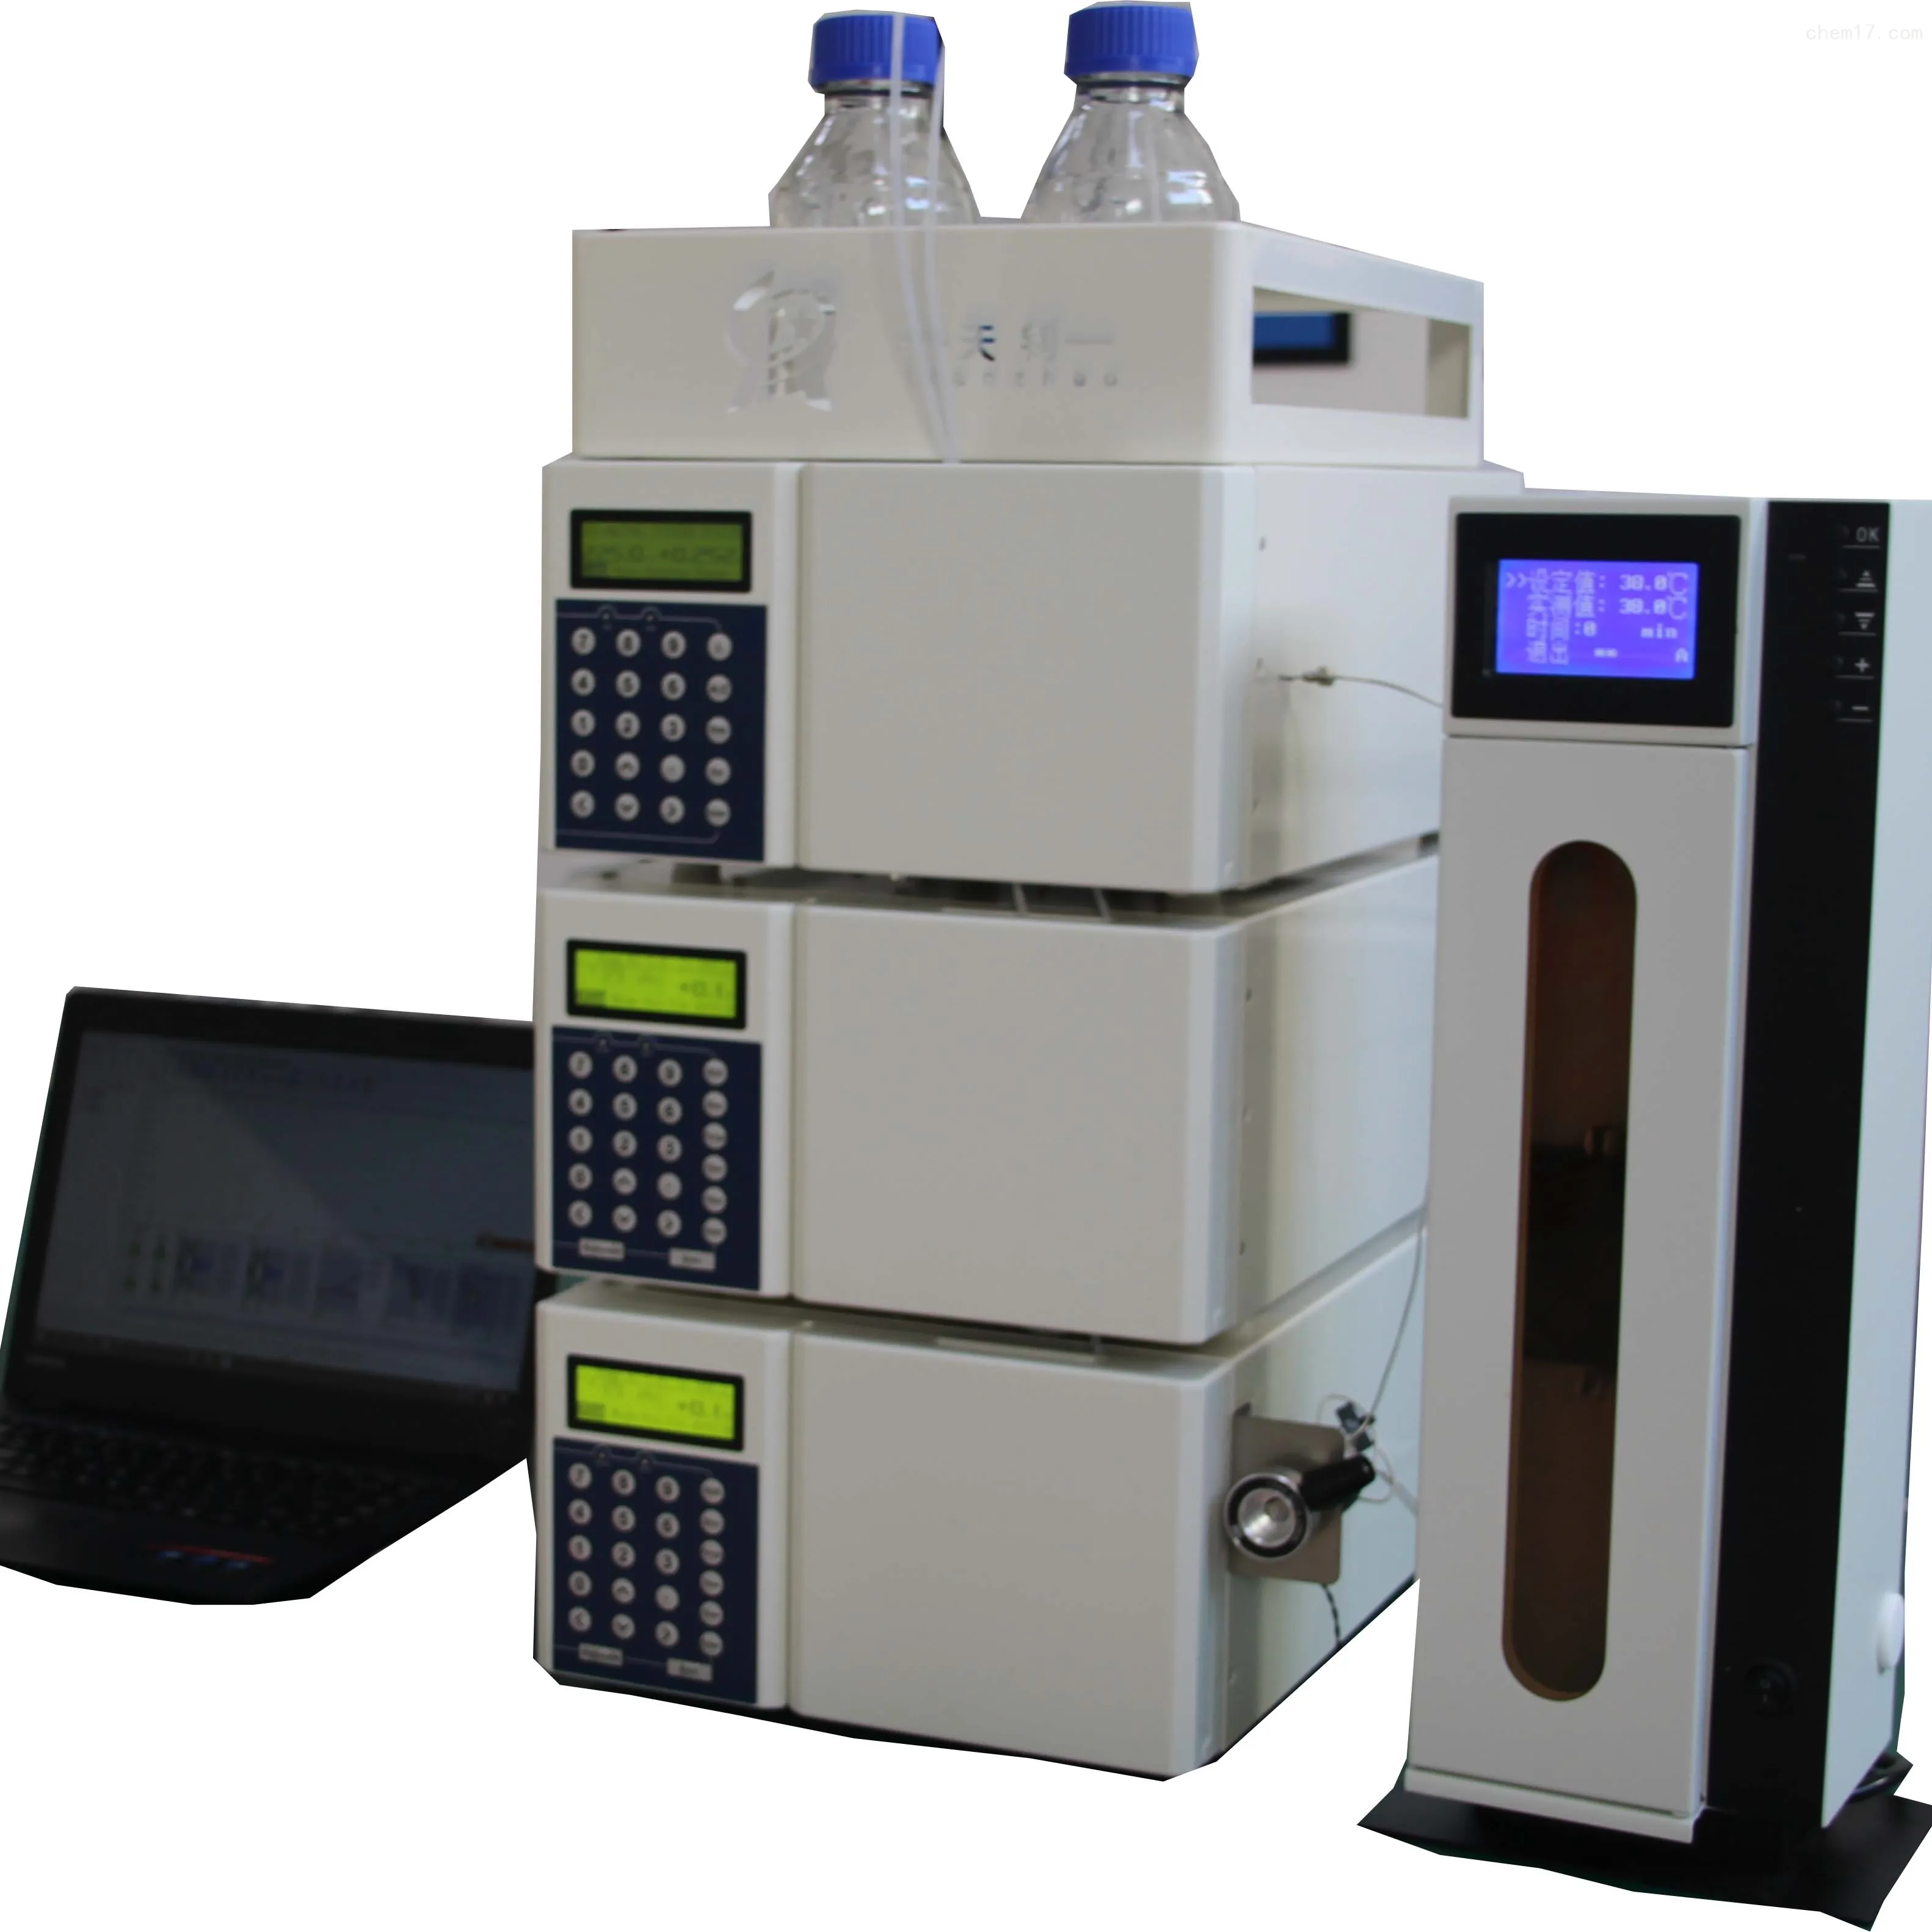 Tianzhao Hplc Chromatografie Instrumenten Voor Laboratoriumanalyse Gebruikt In De Voedingsmiddelen/Chemische/Medische/Farmaceutische Industrie